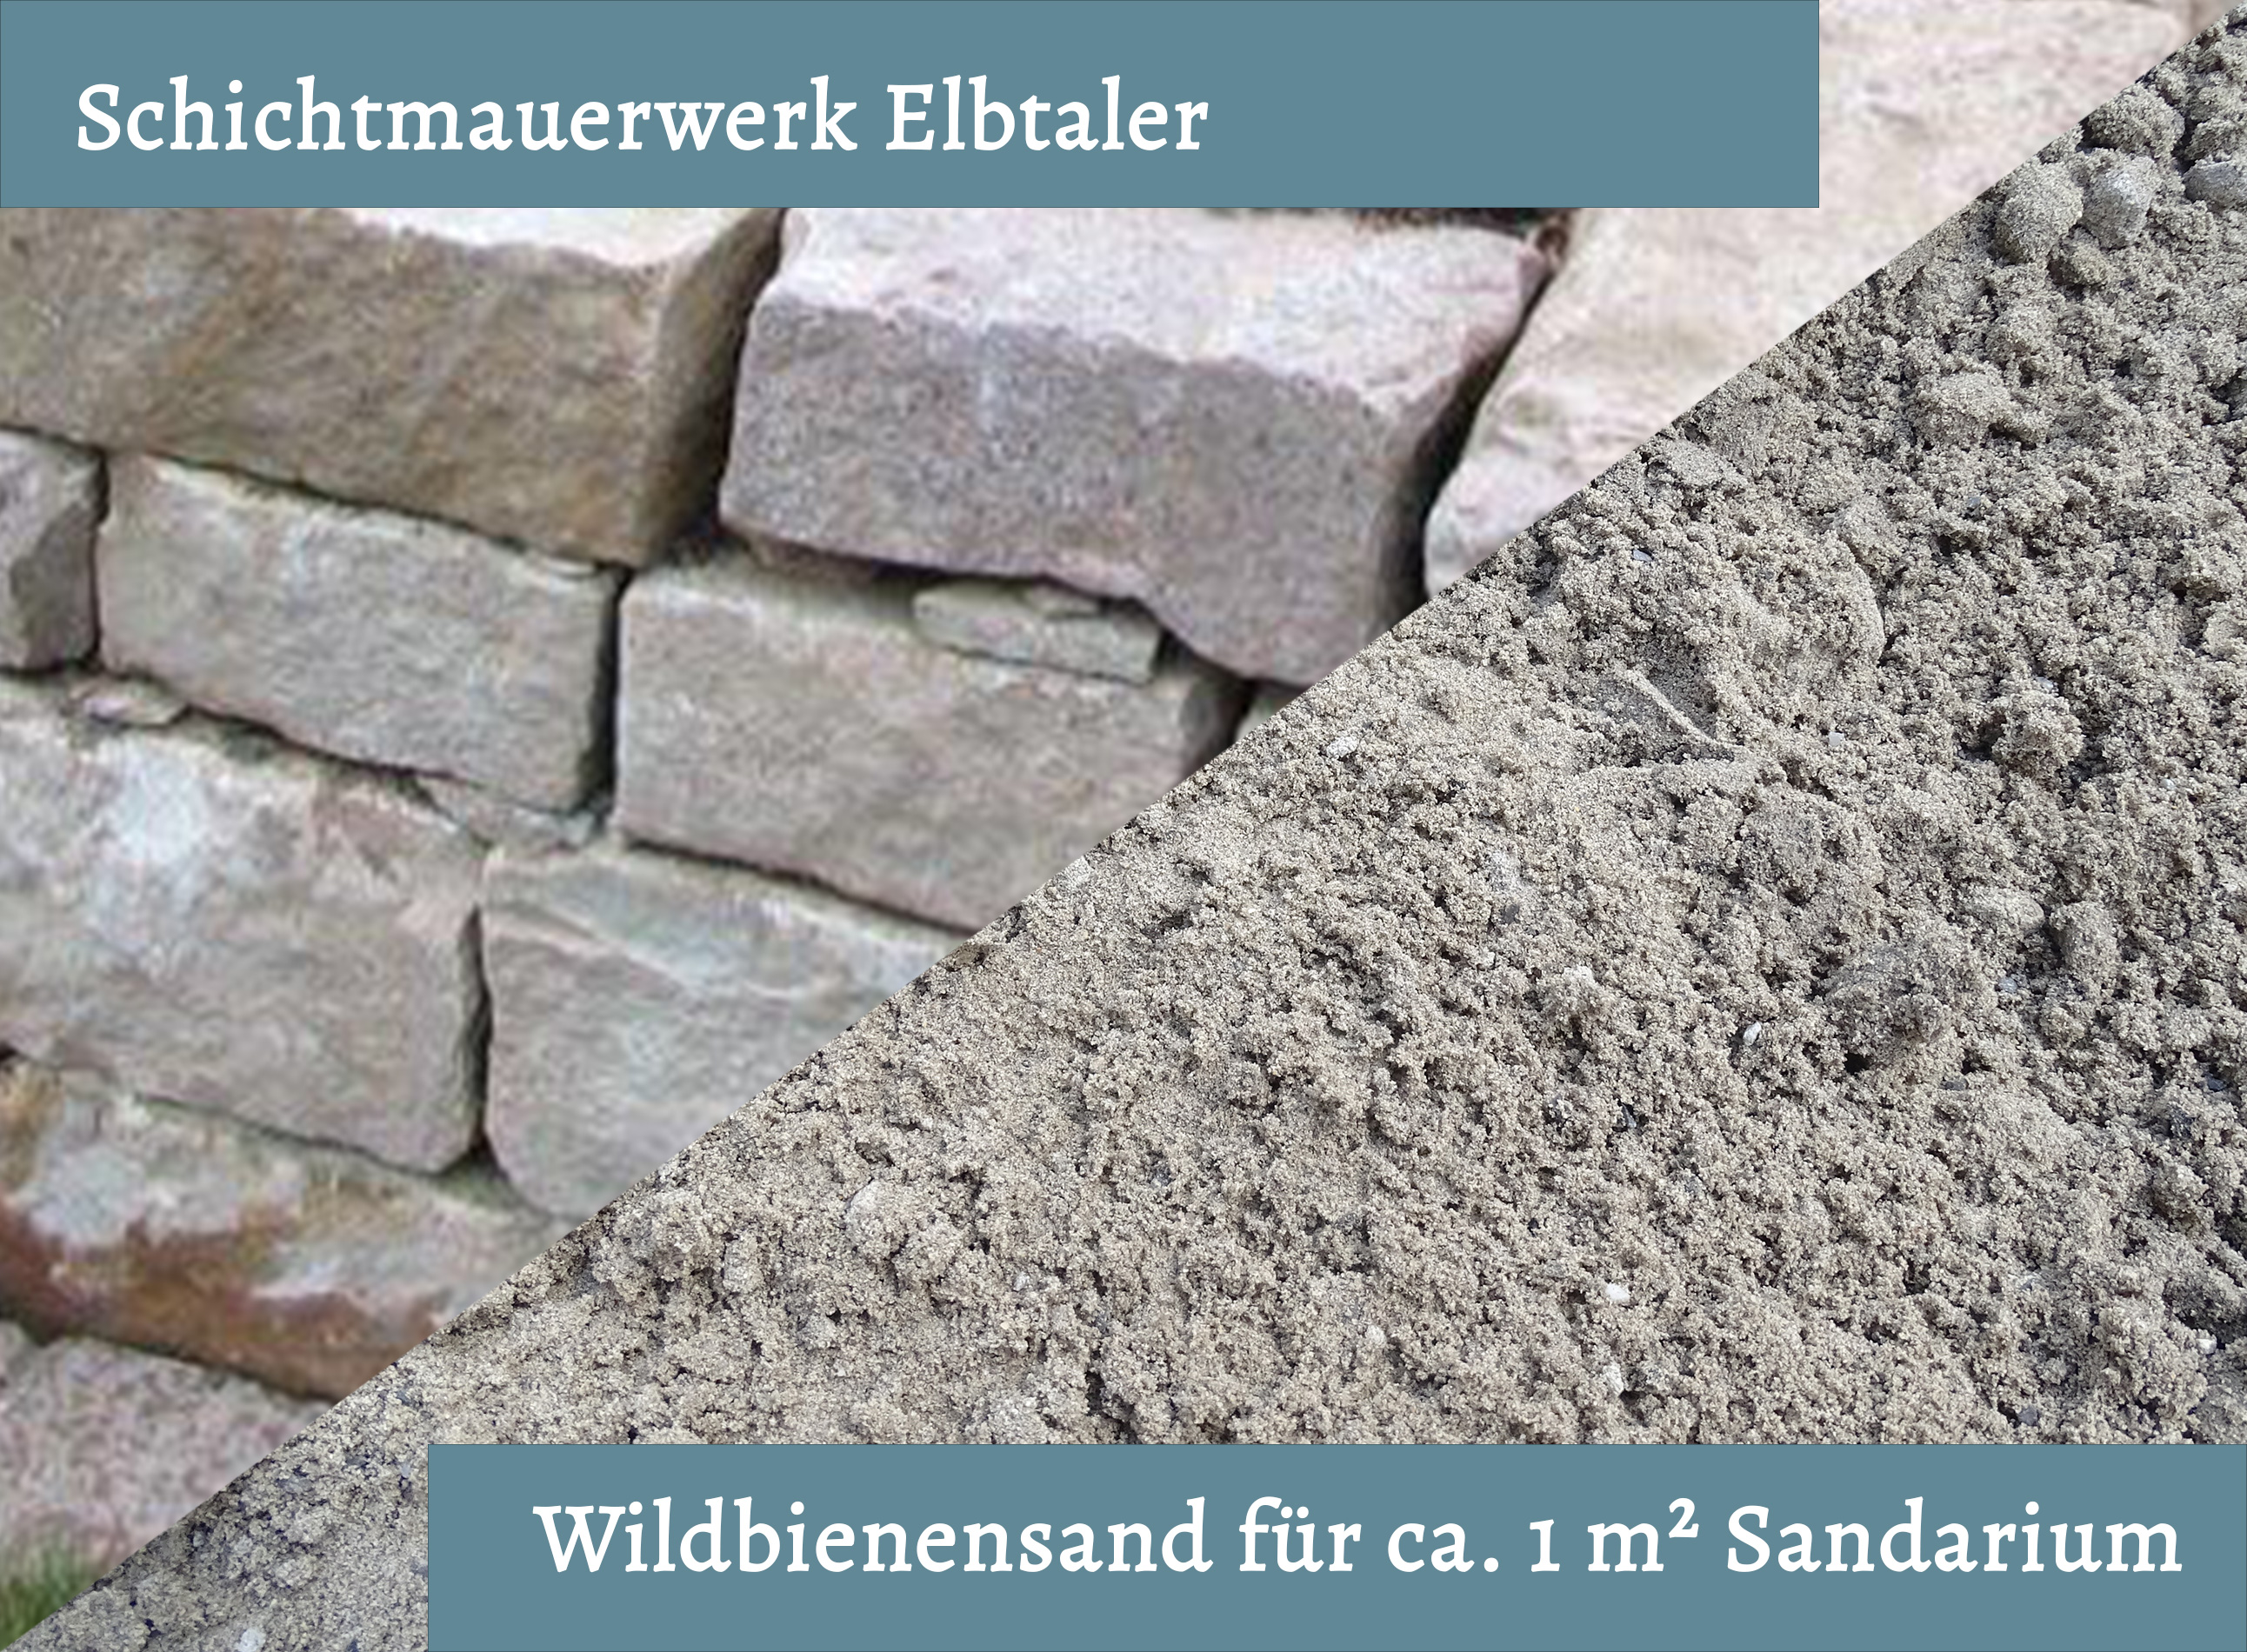 Wildbienensand mit Schichtmauer Elbtaler für Sandarium 1,0 m²